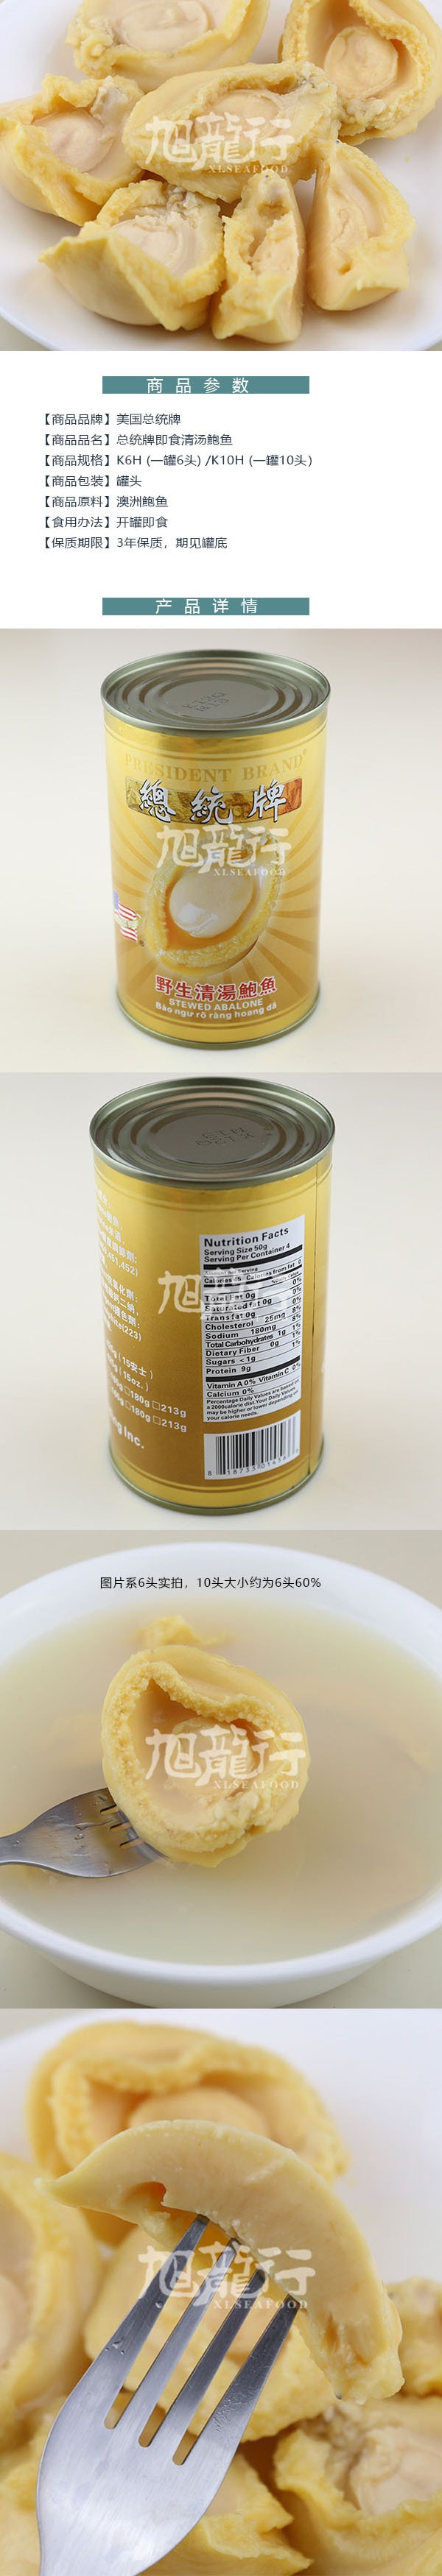 美國旭龍行 總統牌 清湯即食鮑魚罐頭 10頭 每罐10隻